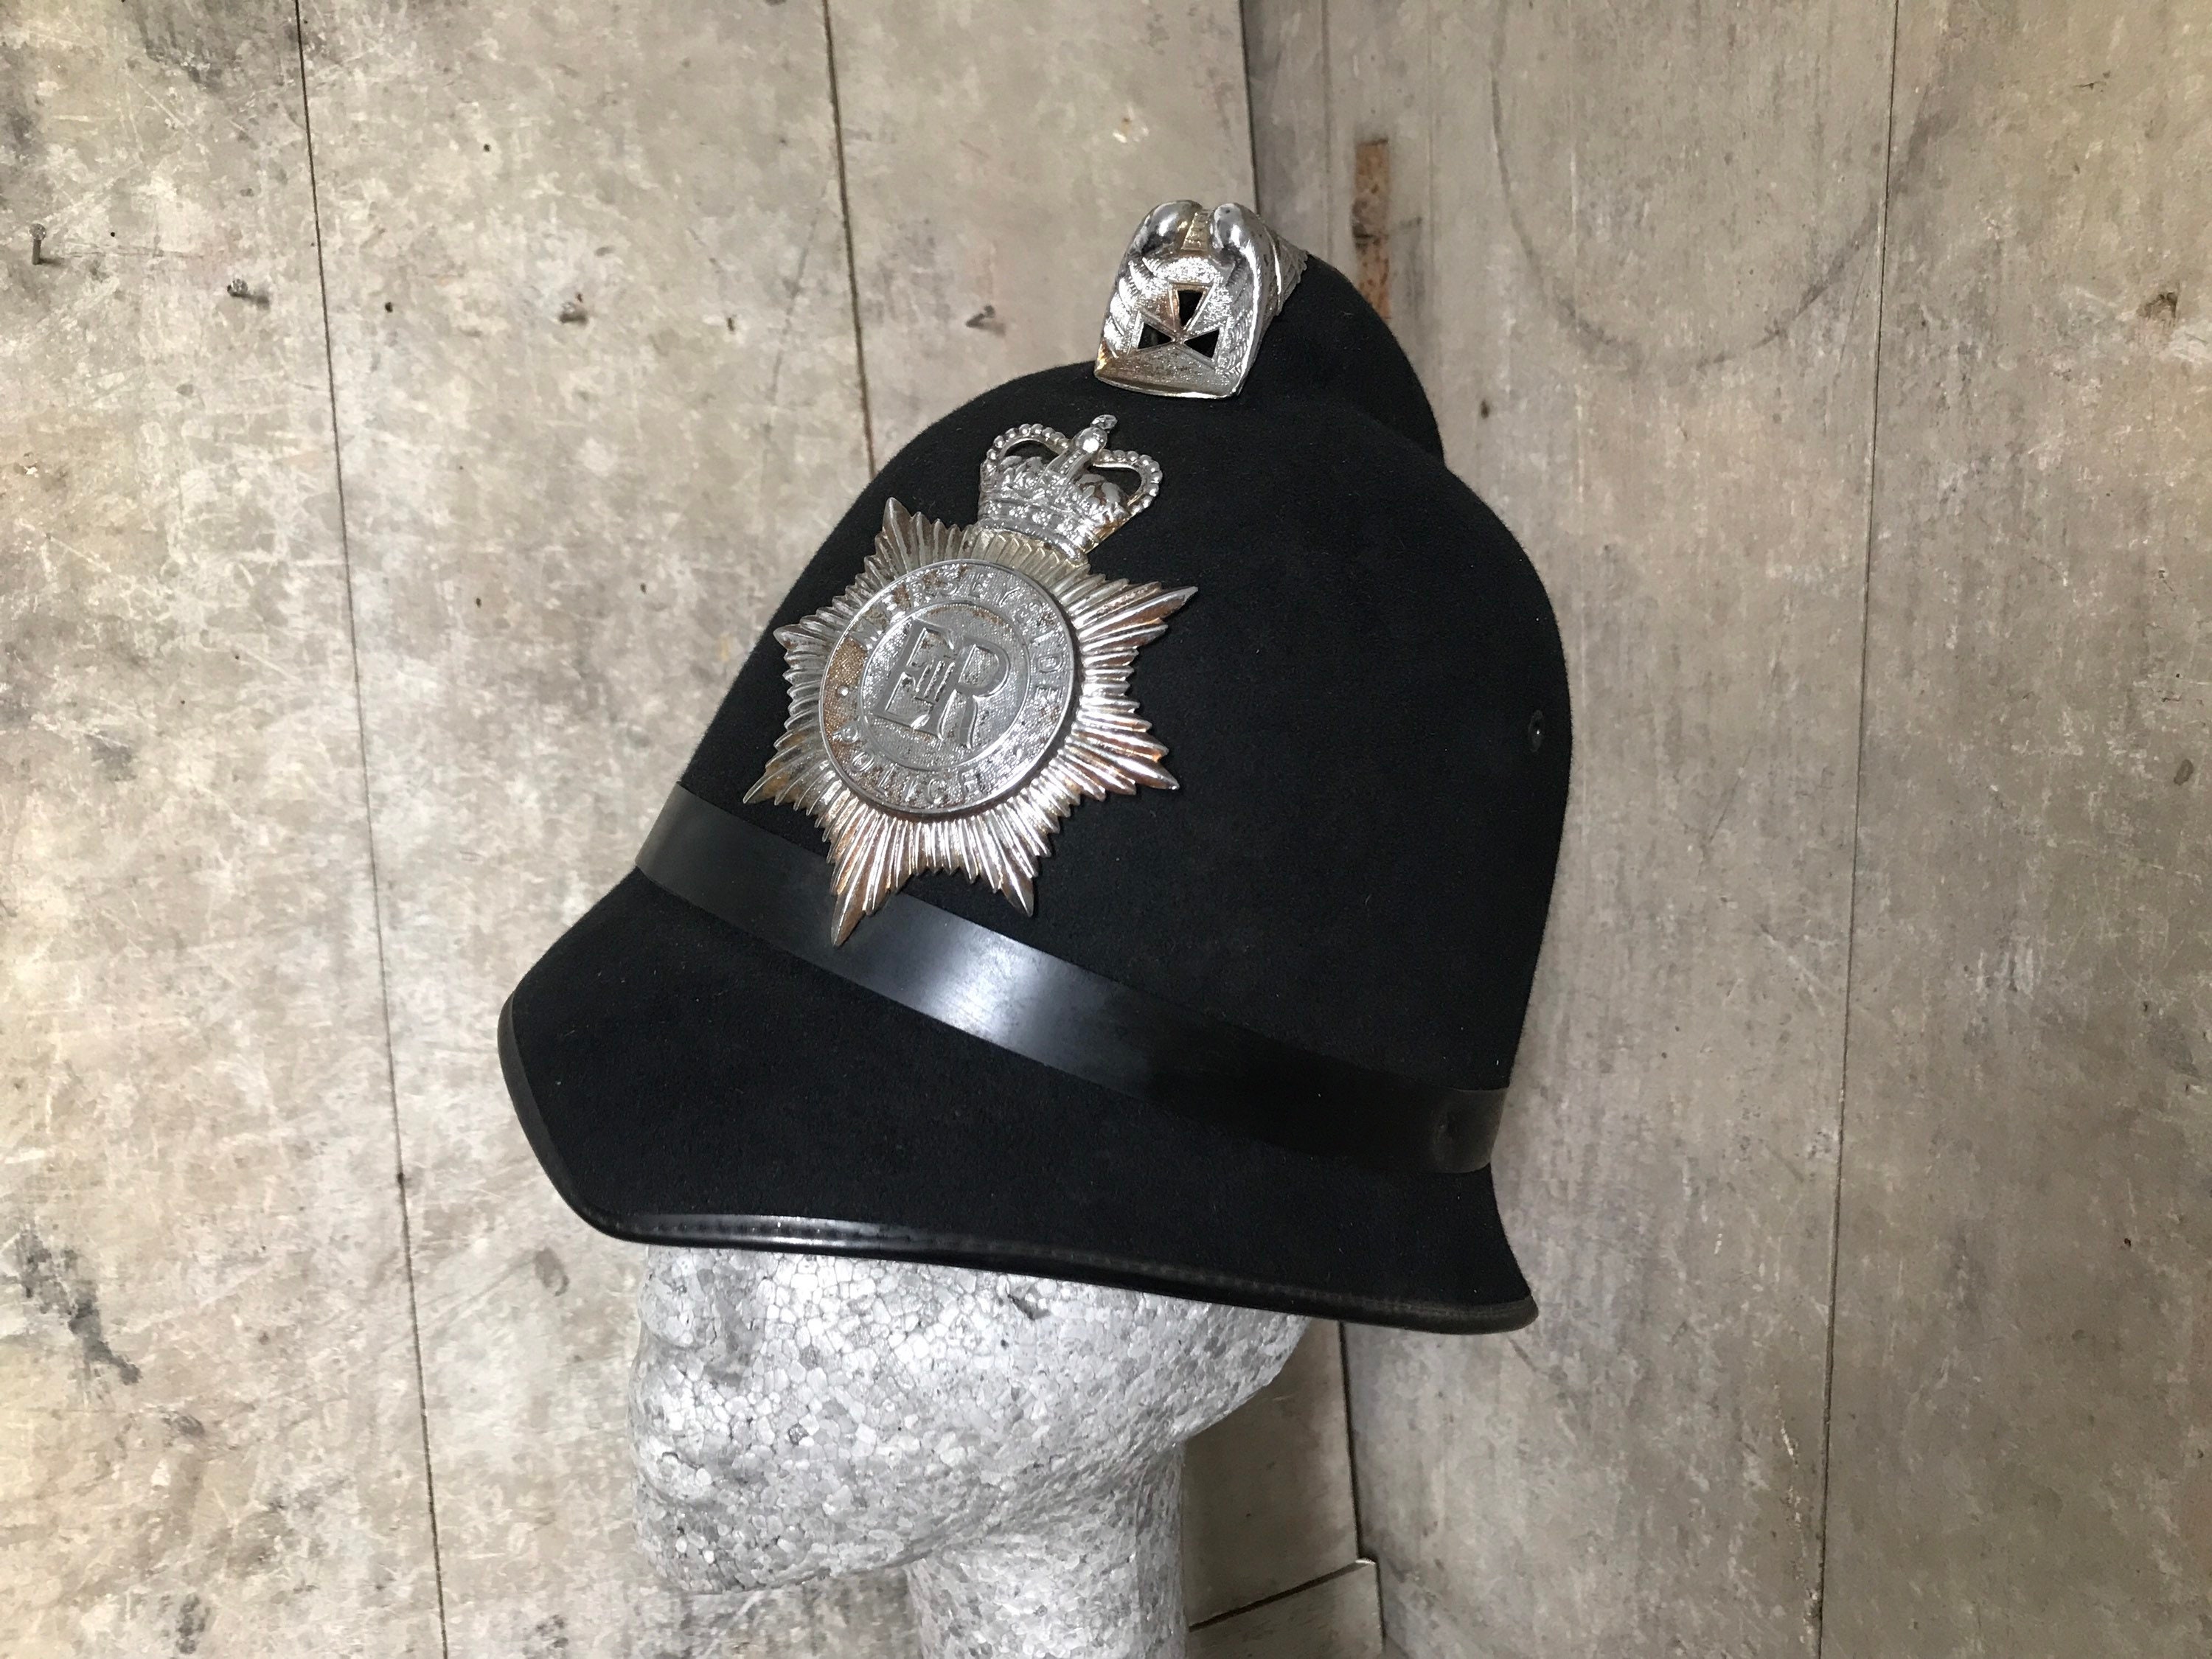 Gorra de policía - Accesorio para disfraz de policía. Gorras de color negro  con insignia de plata. Gorras divertidas para fiestas.